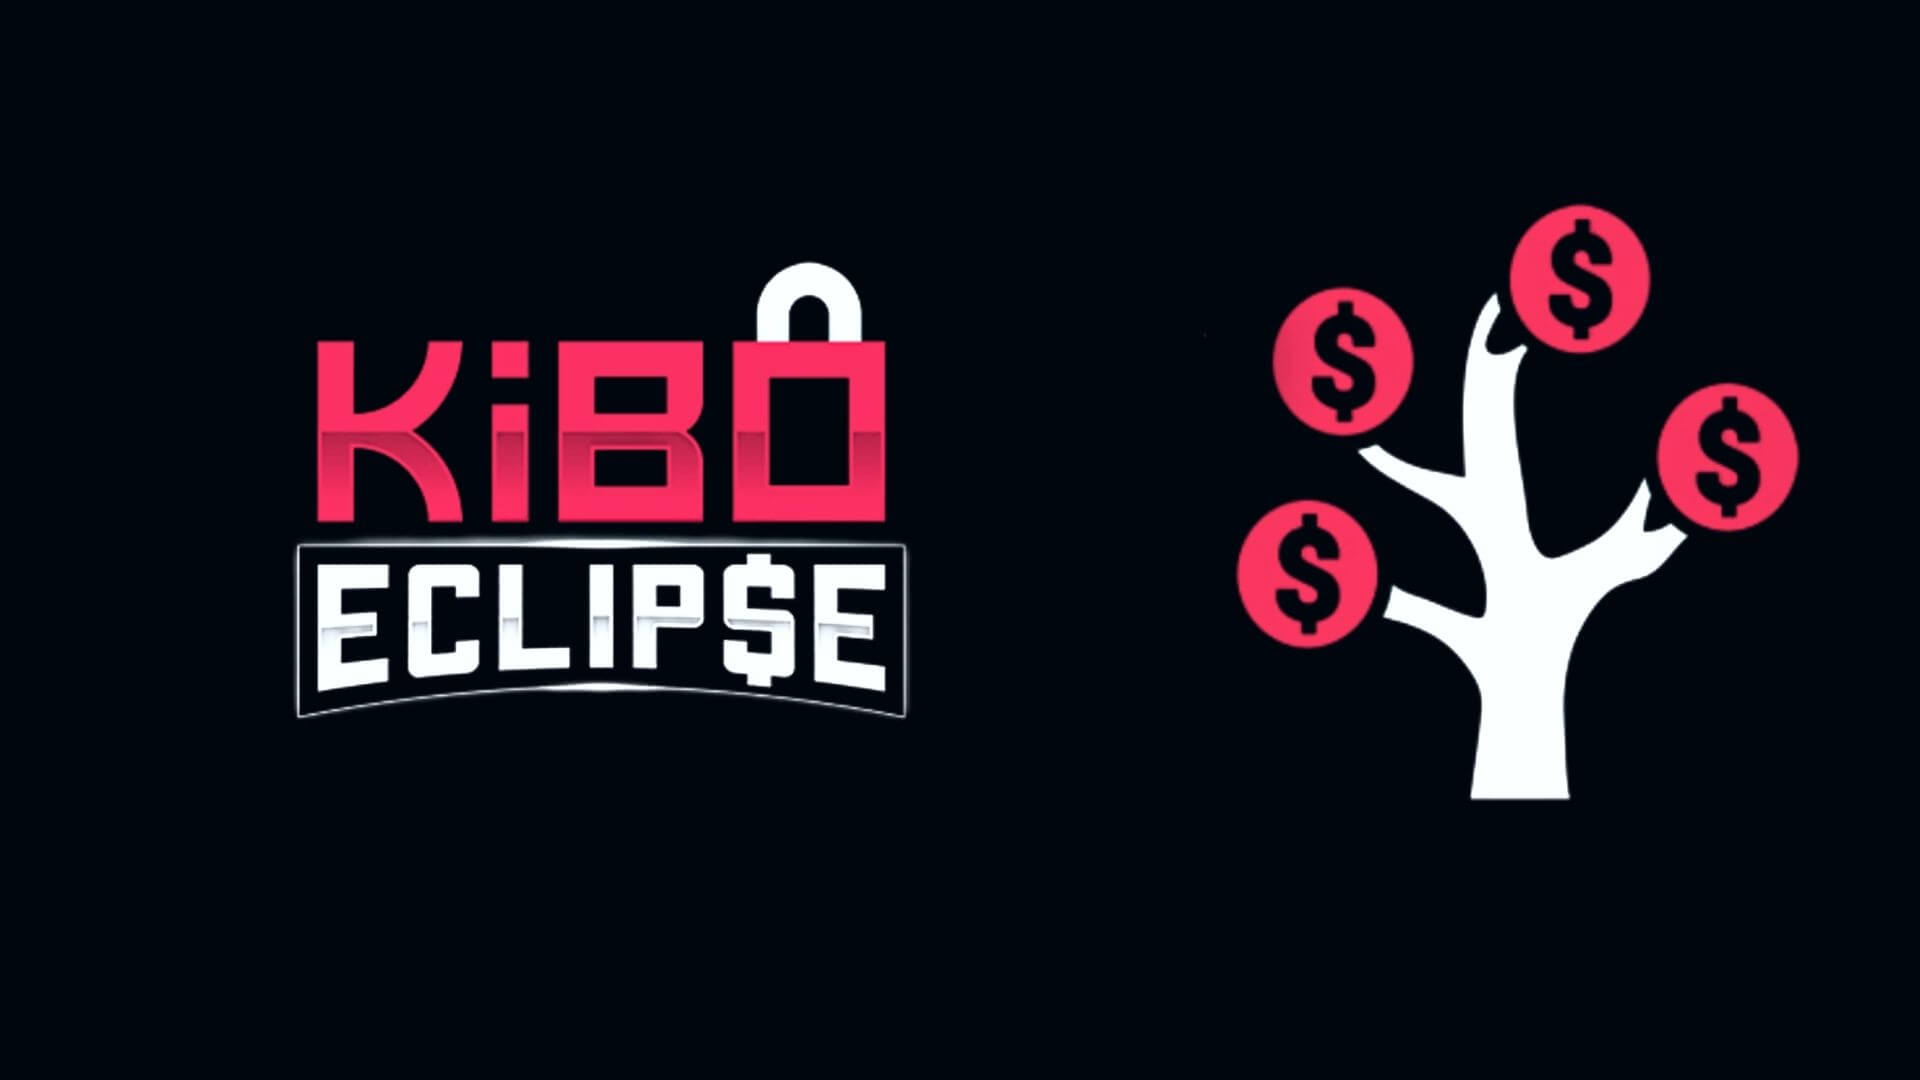 The Kibo Eclipse